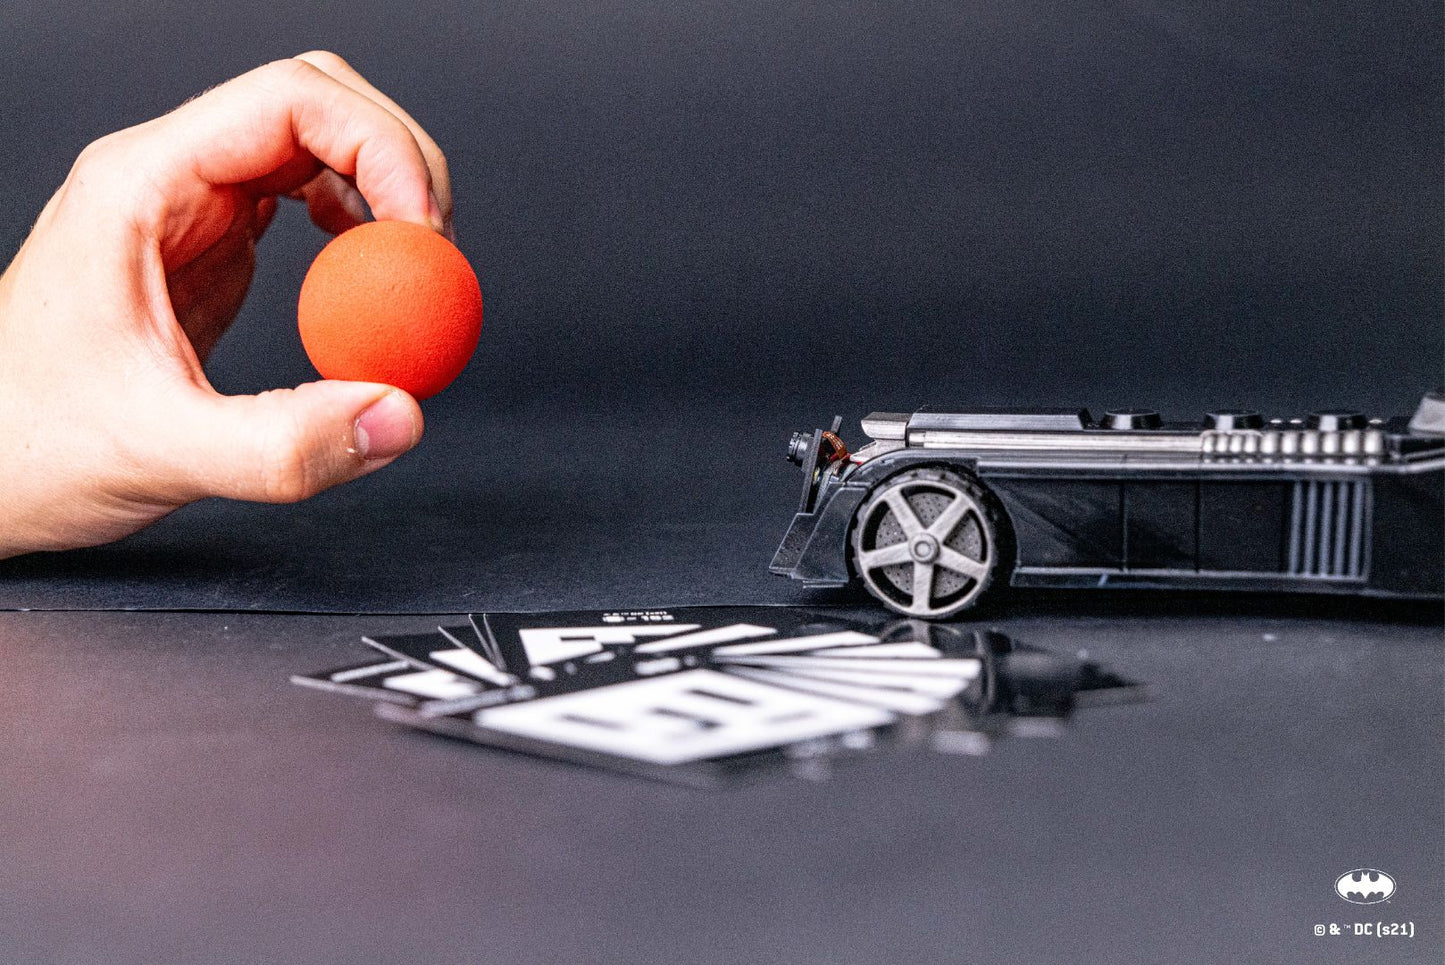 CircuitMess BatmobileTM - DIY AI-Powered Robot Car